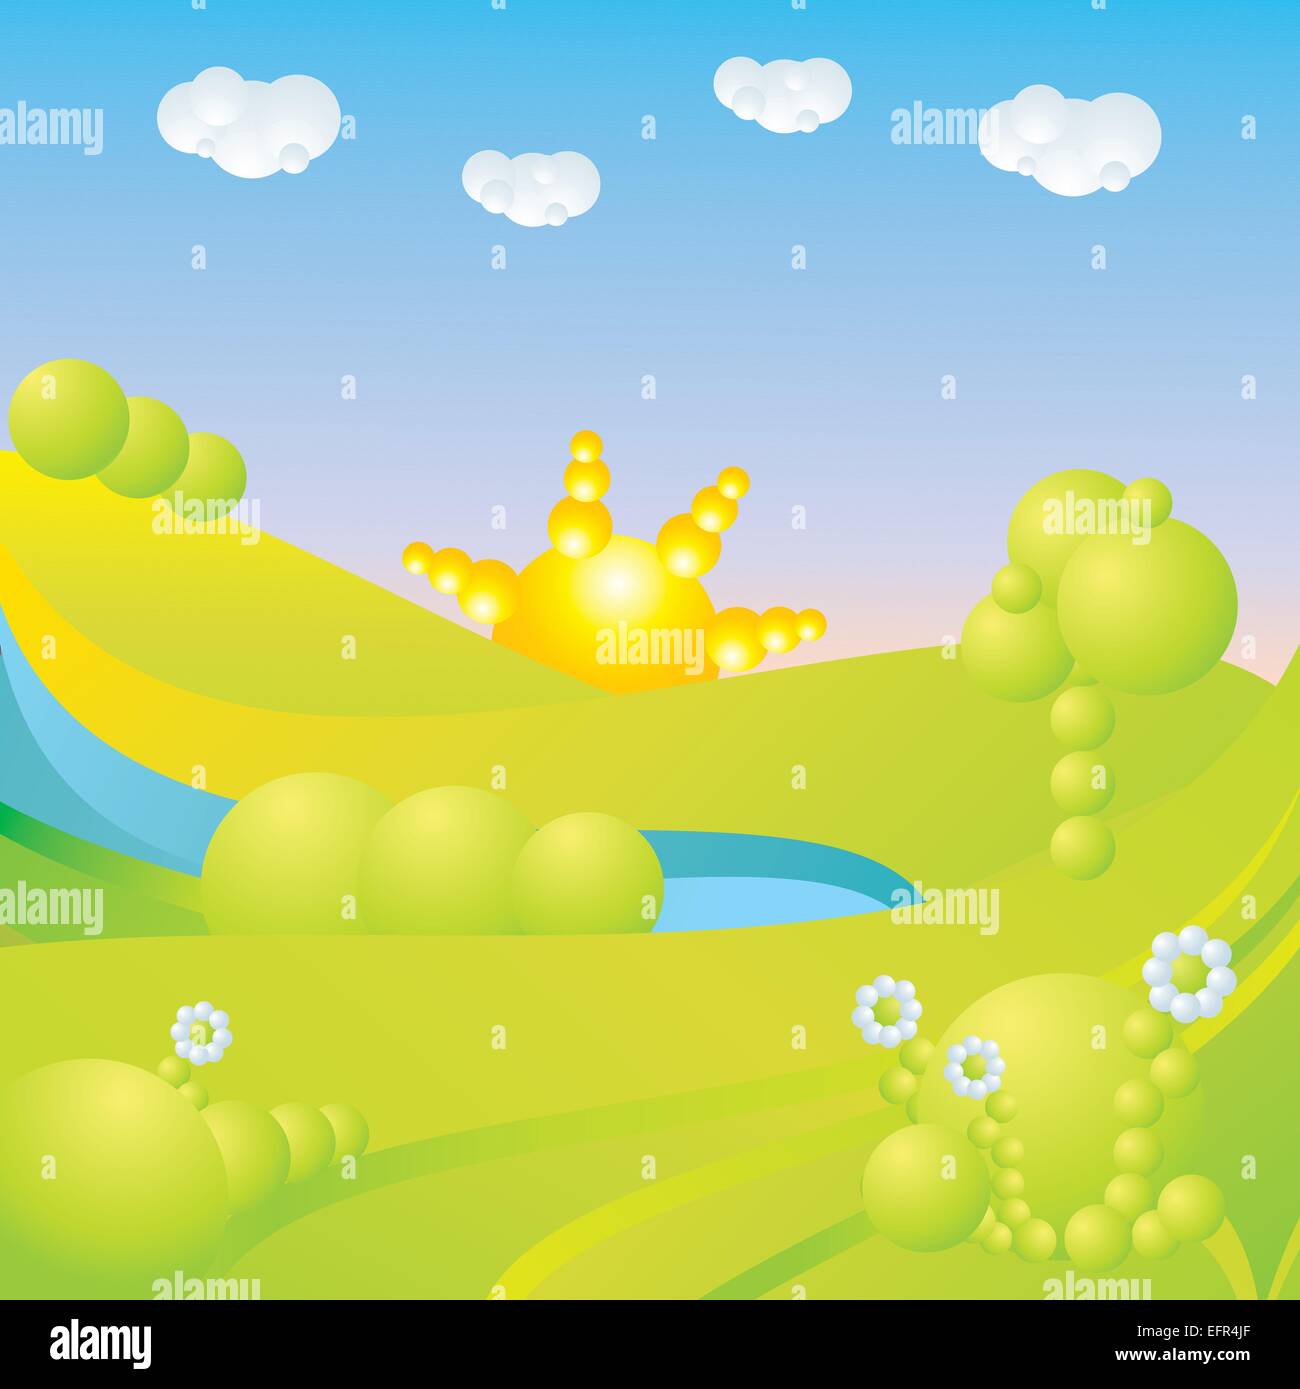 blauer Himmel, grüne Rasen, Bäume, Wolken, Sonne und Blumen abstrakte Landschaft-Vektor-illustration Stock Vektor